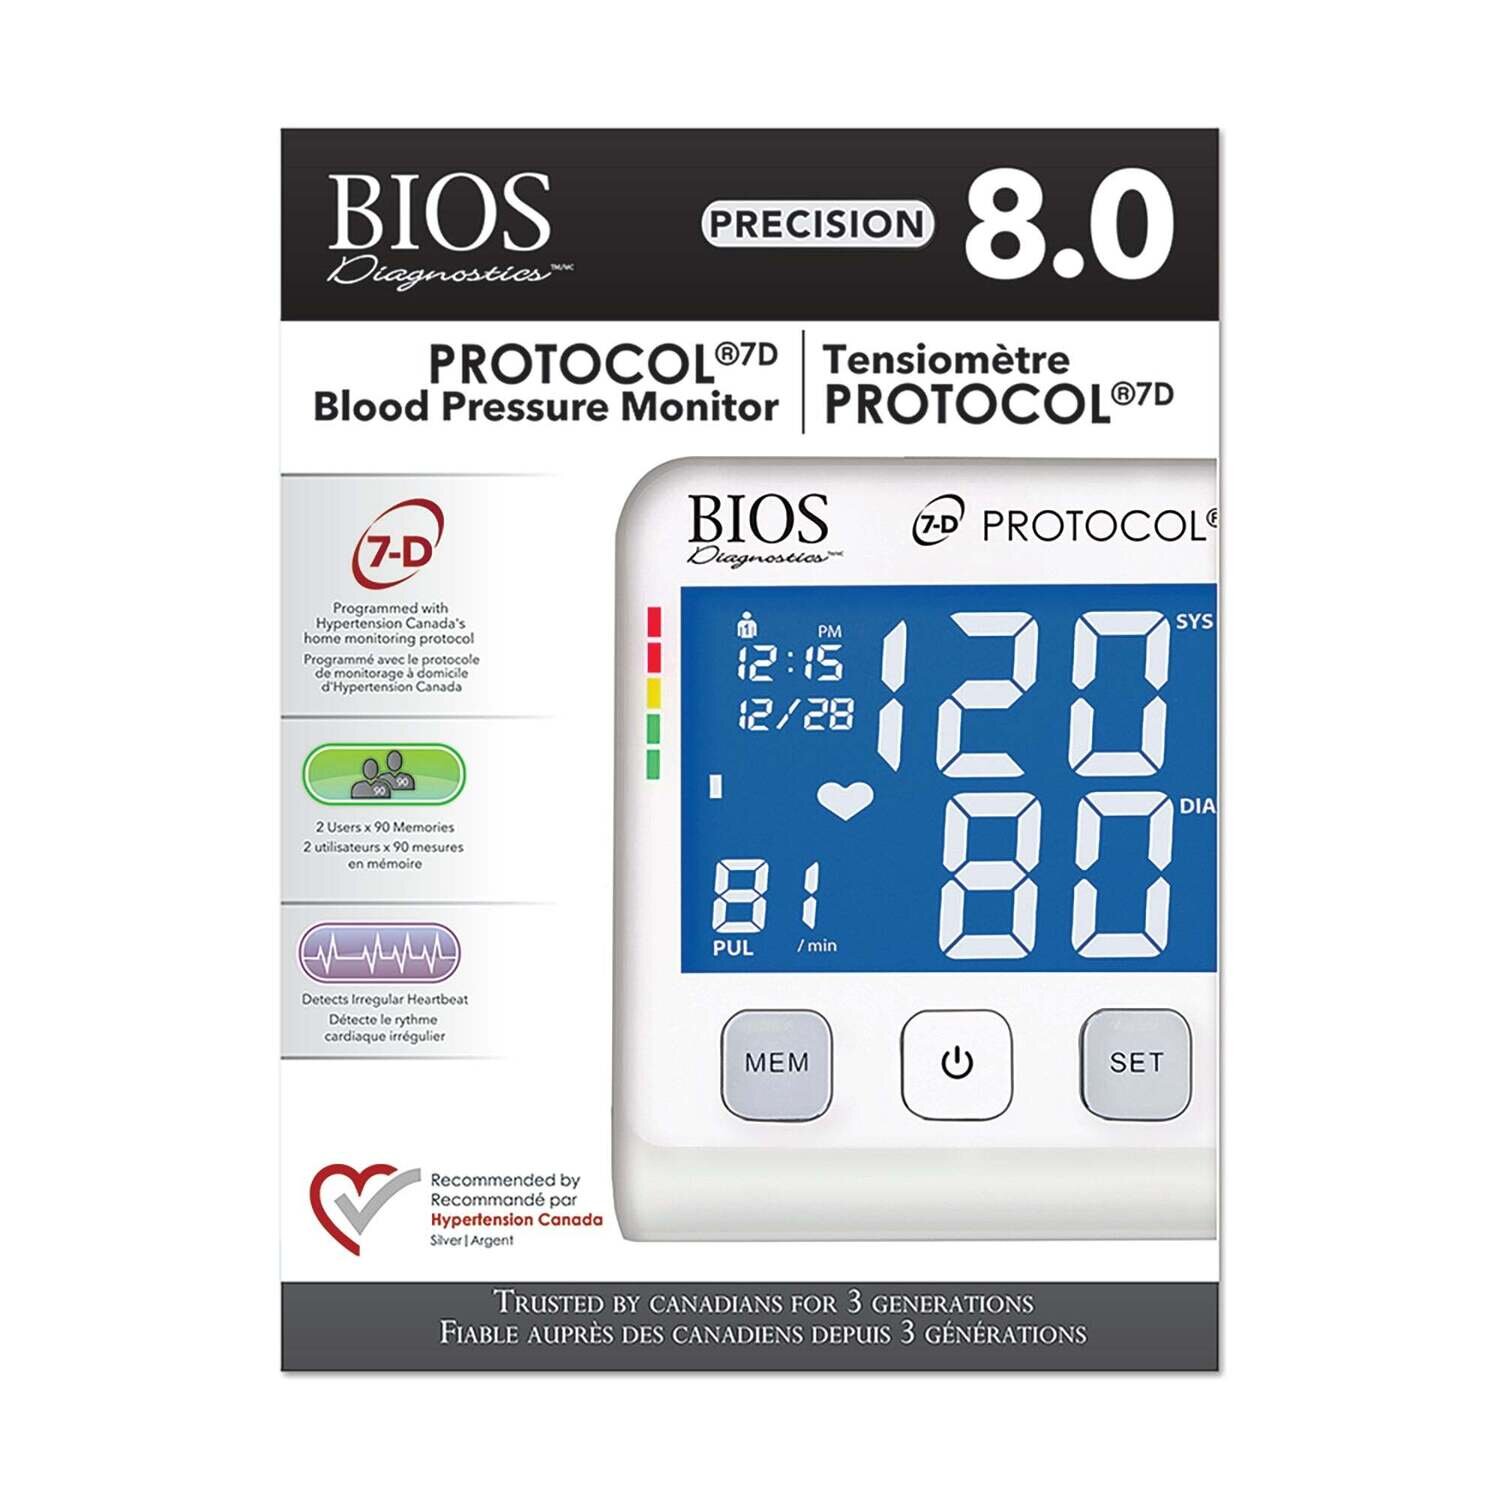 Protocol® 7D Home Blood Pressure Monitor (Precision 8.0)